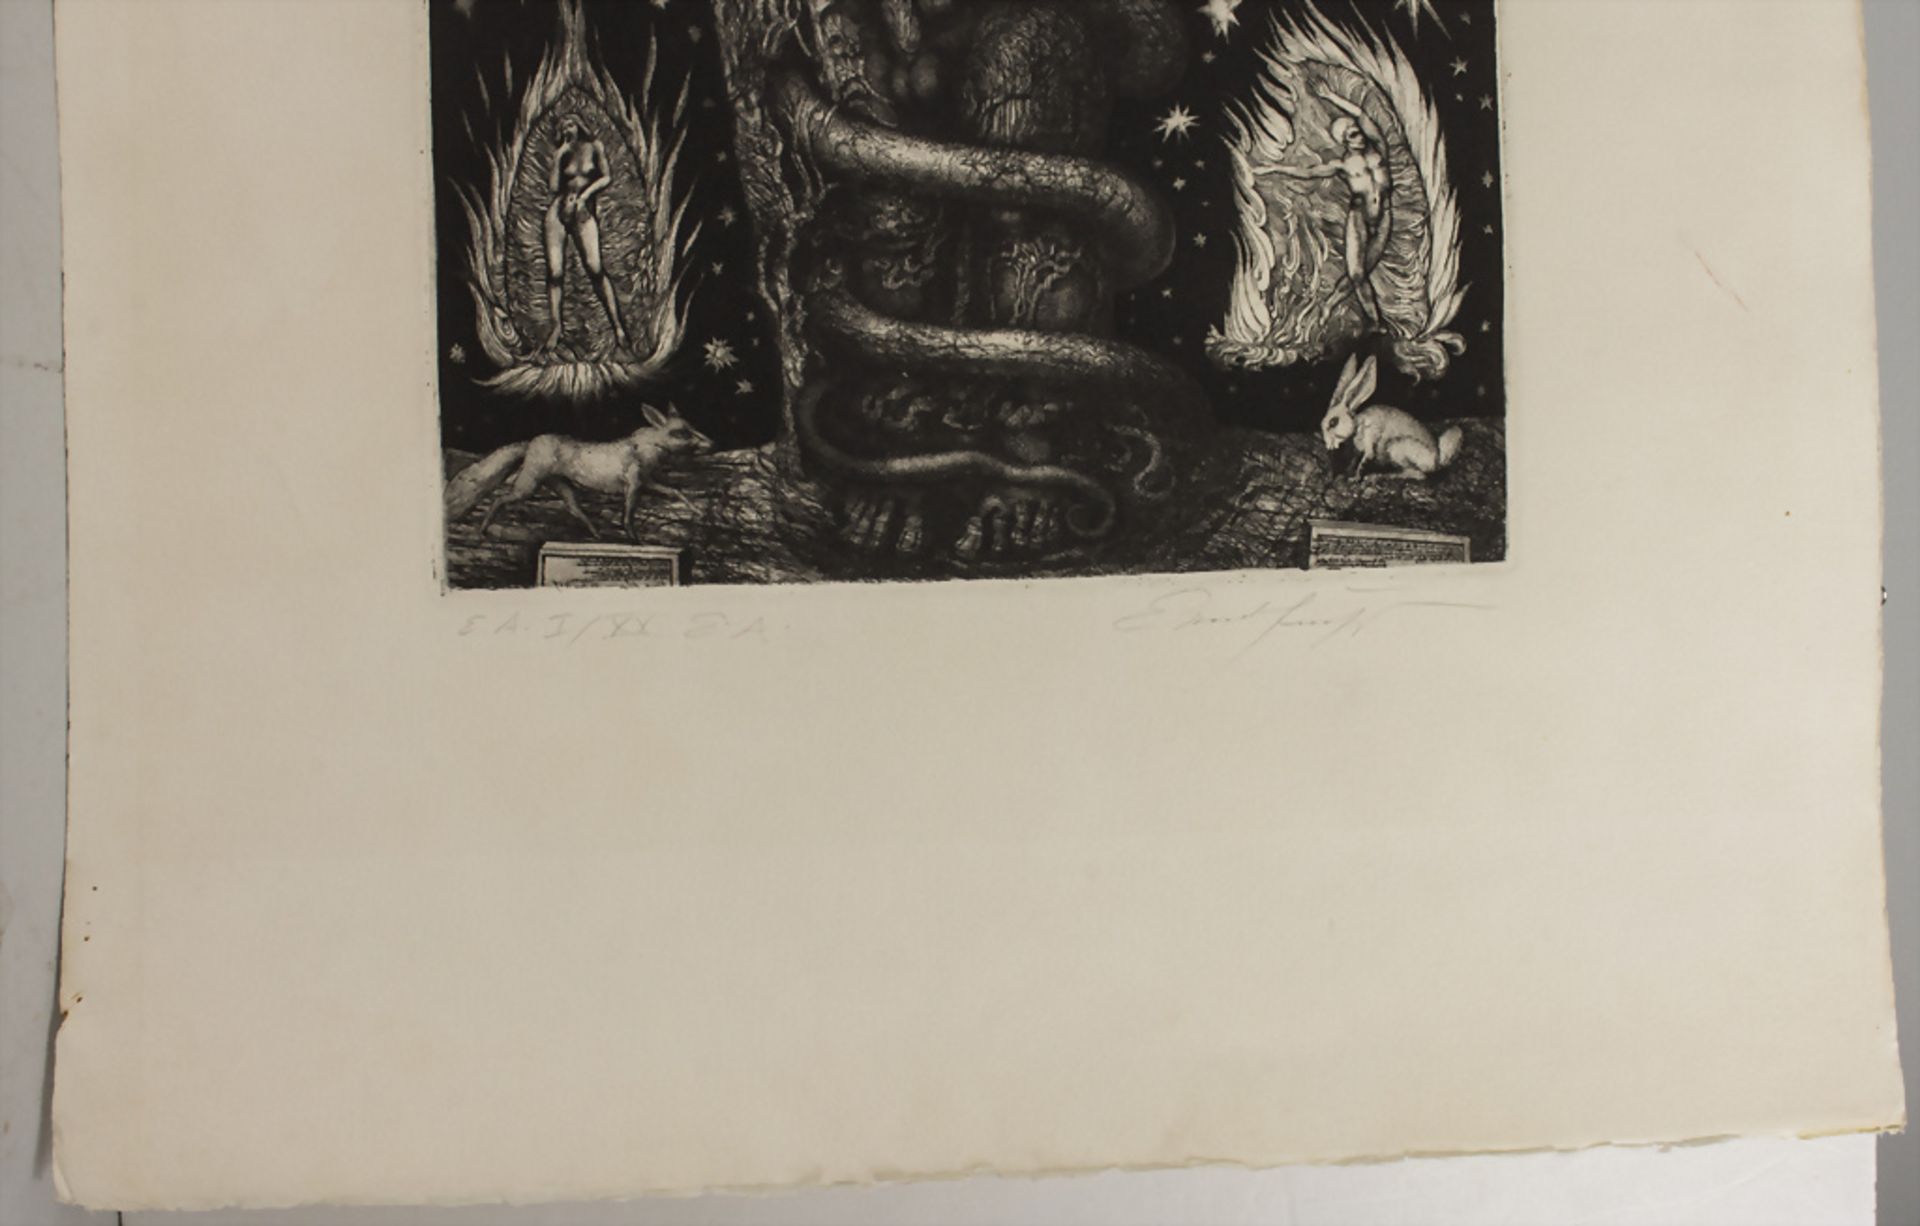 Phantastischer Realismus, Ernst Fuchs (1930-2015), 'Adams Traum' / 'Adam's dream', 1969 - Bild 4 aus 5